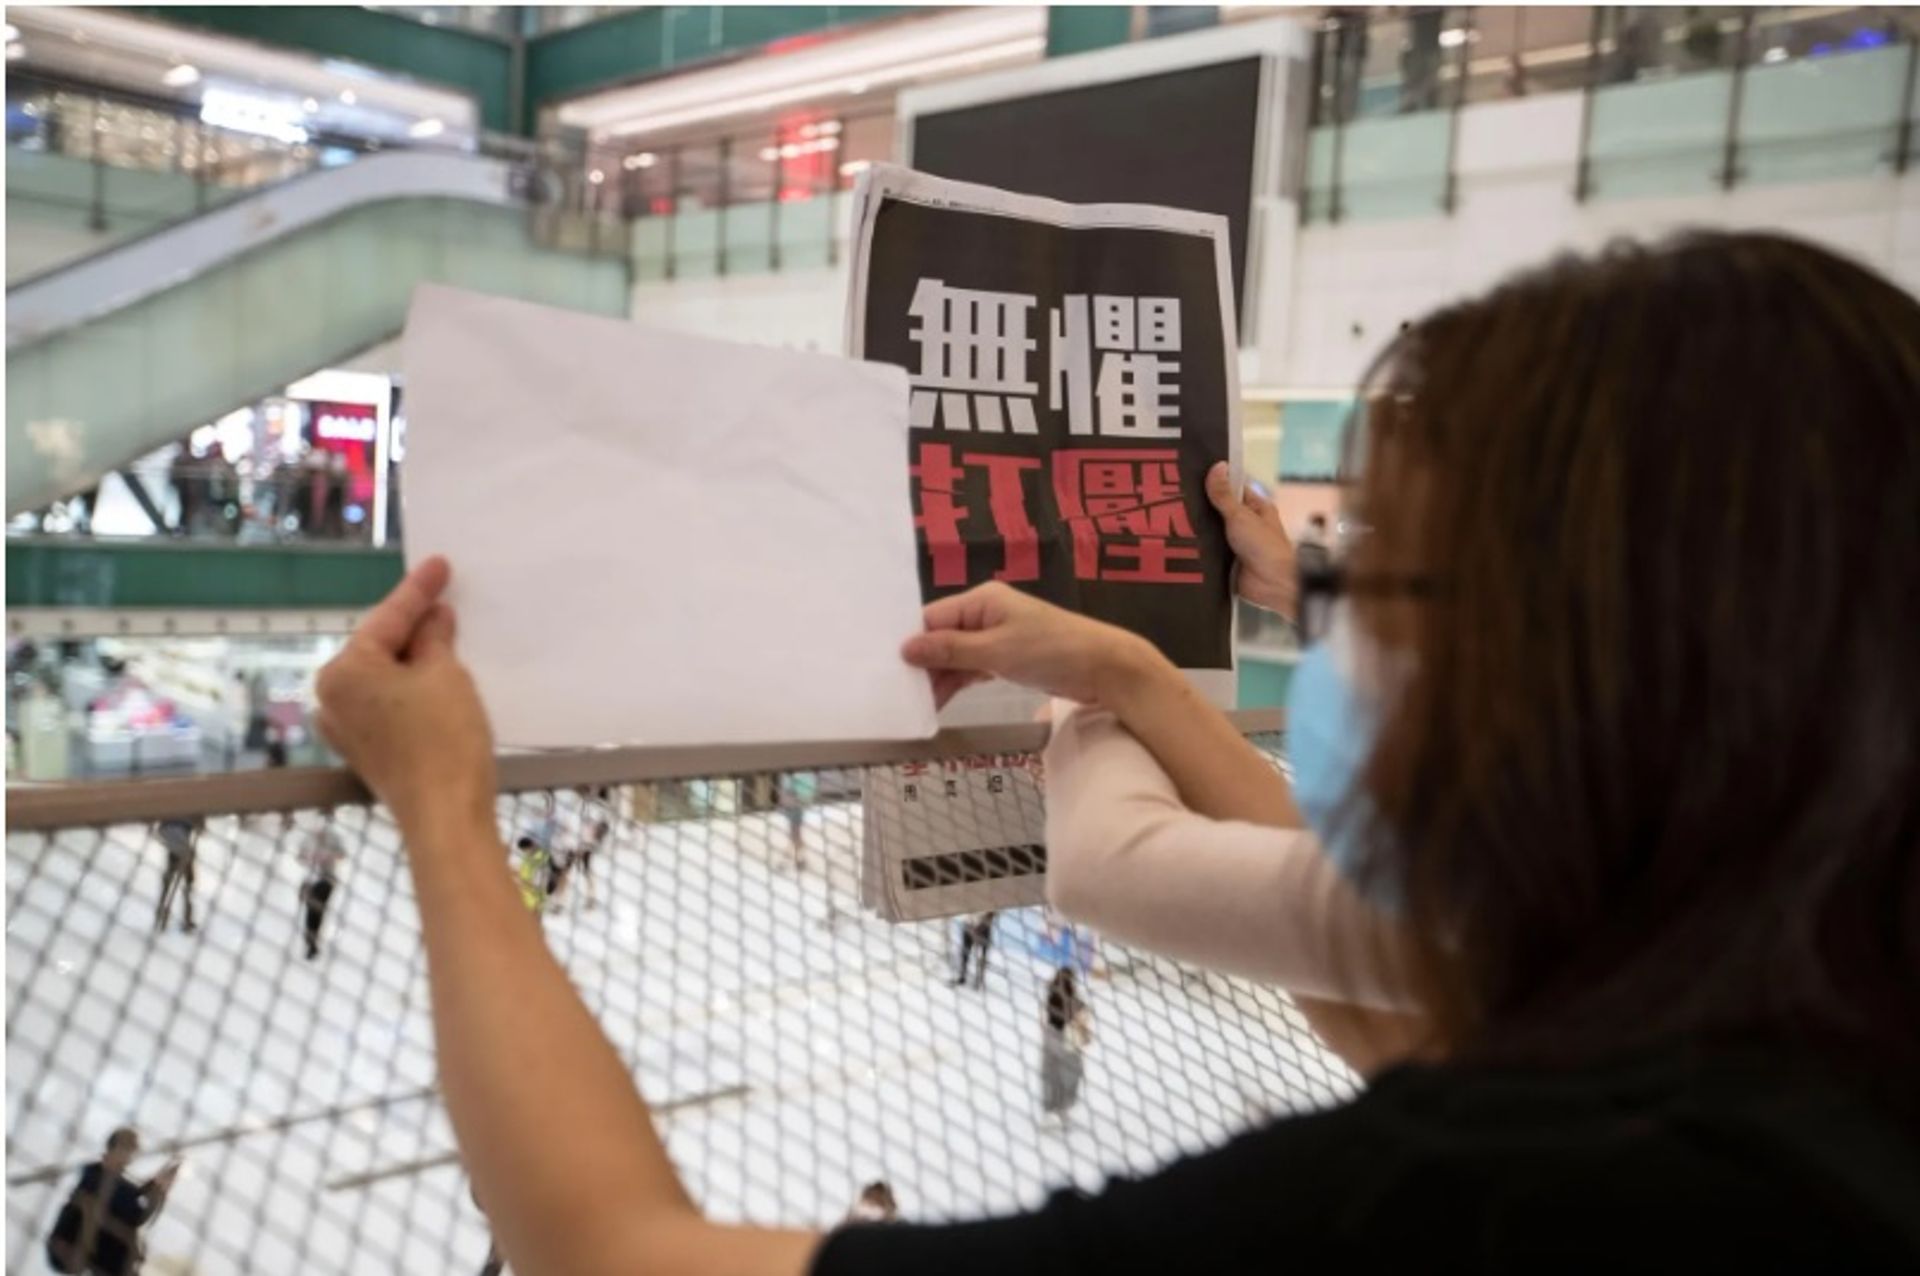 אנשים מחזיקים עותקים של העיתון "אפל דיילי" שנסגר וגיליונות ריקים בזמן שהם מוחים על חופש העיתונות בקניון בהונג קונג.

באדיבות Alamy